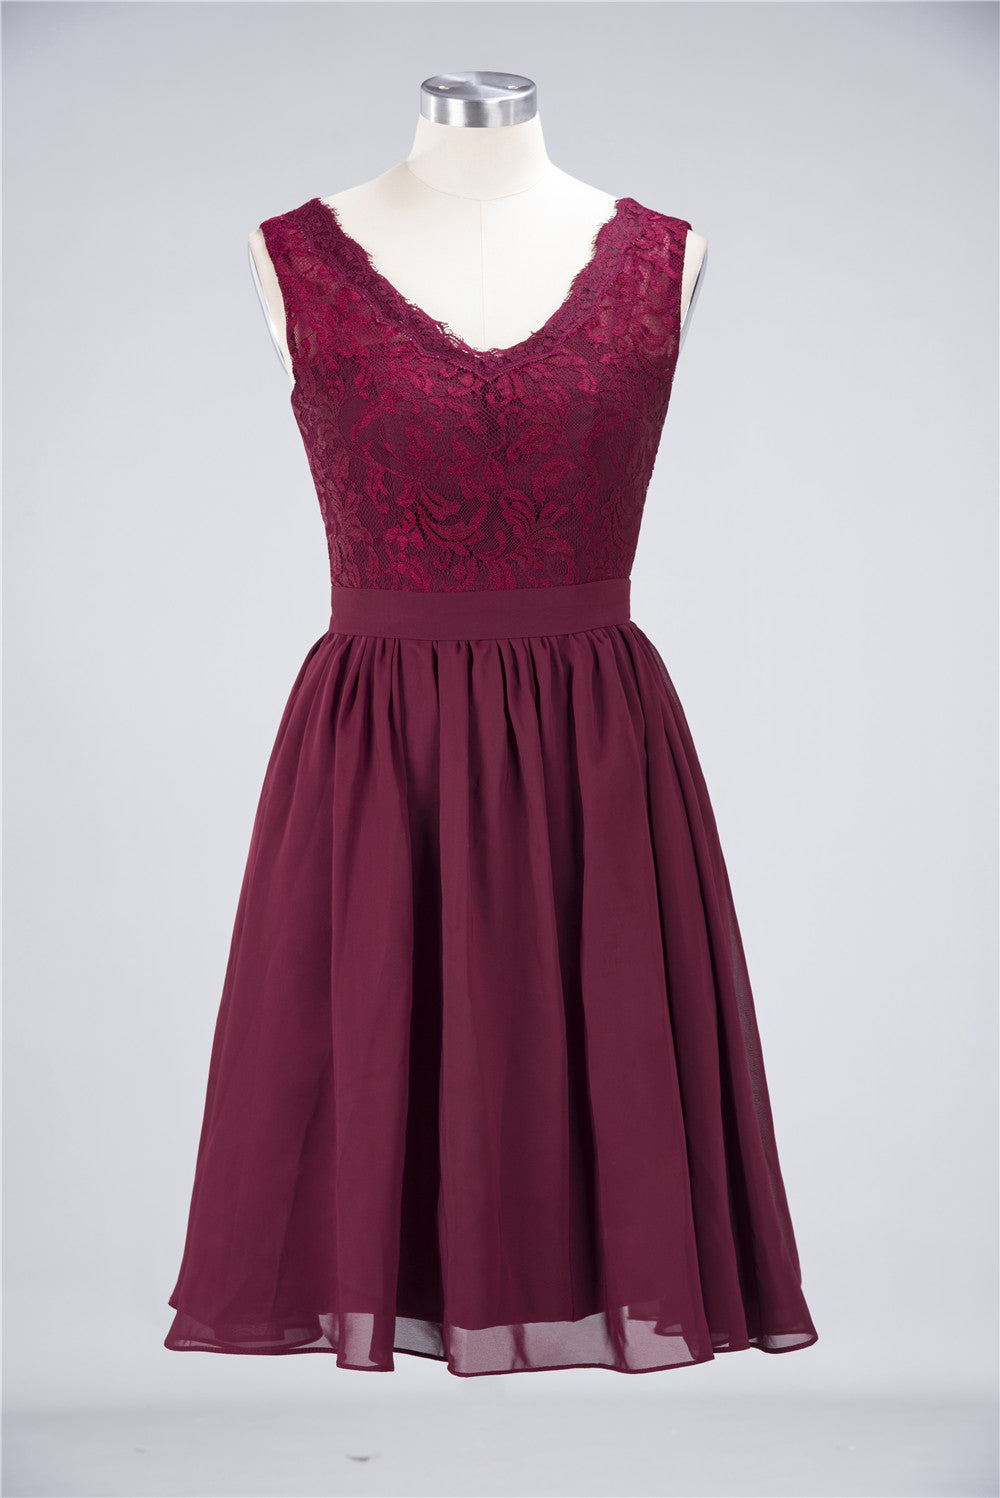 Elegant Lace V-Neck Short Burgundy Chiffon Bridesmaid Dress with Ruffle